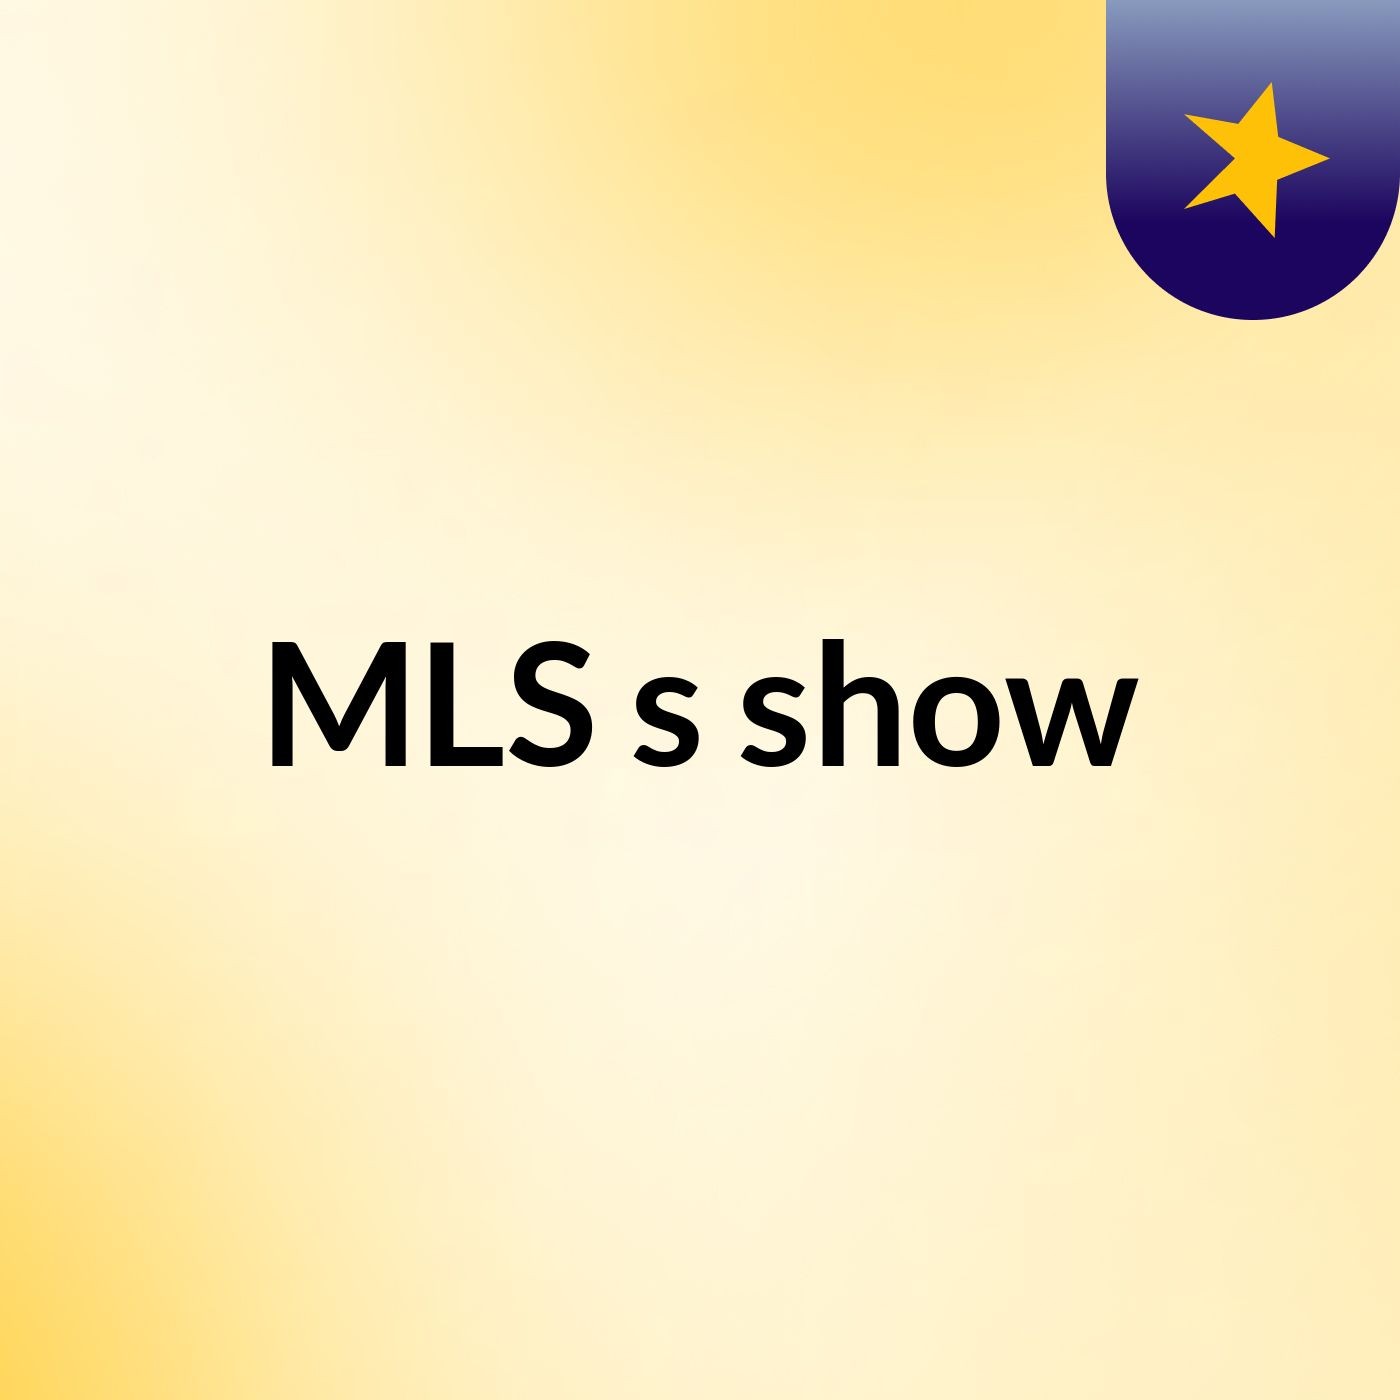 MLS's show